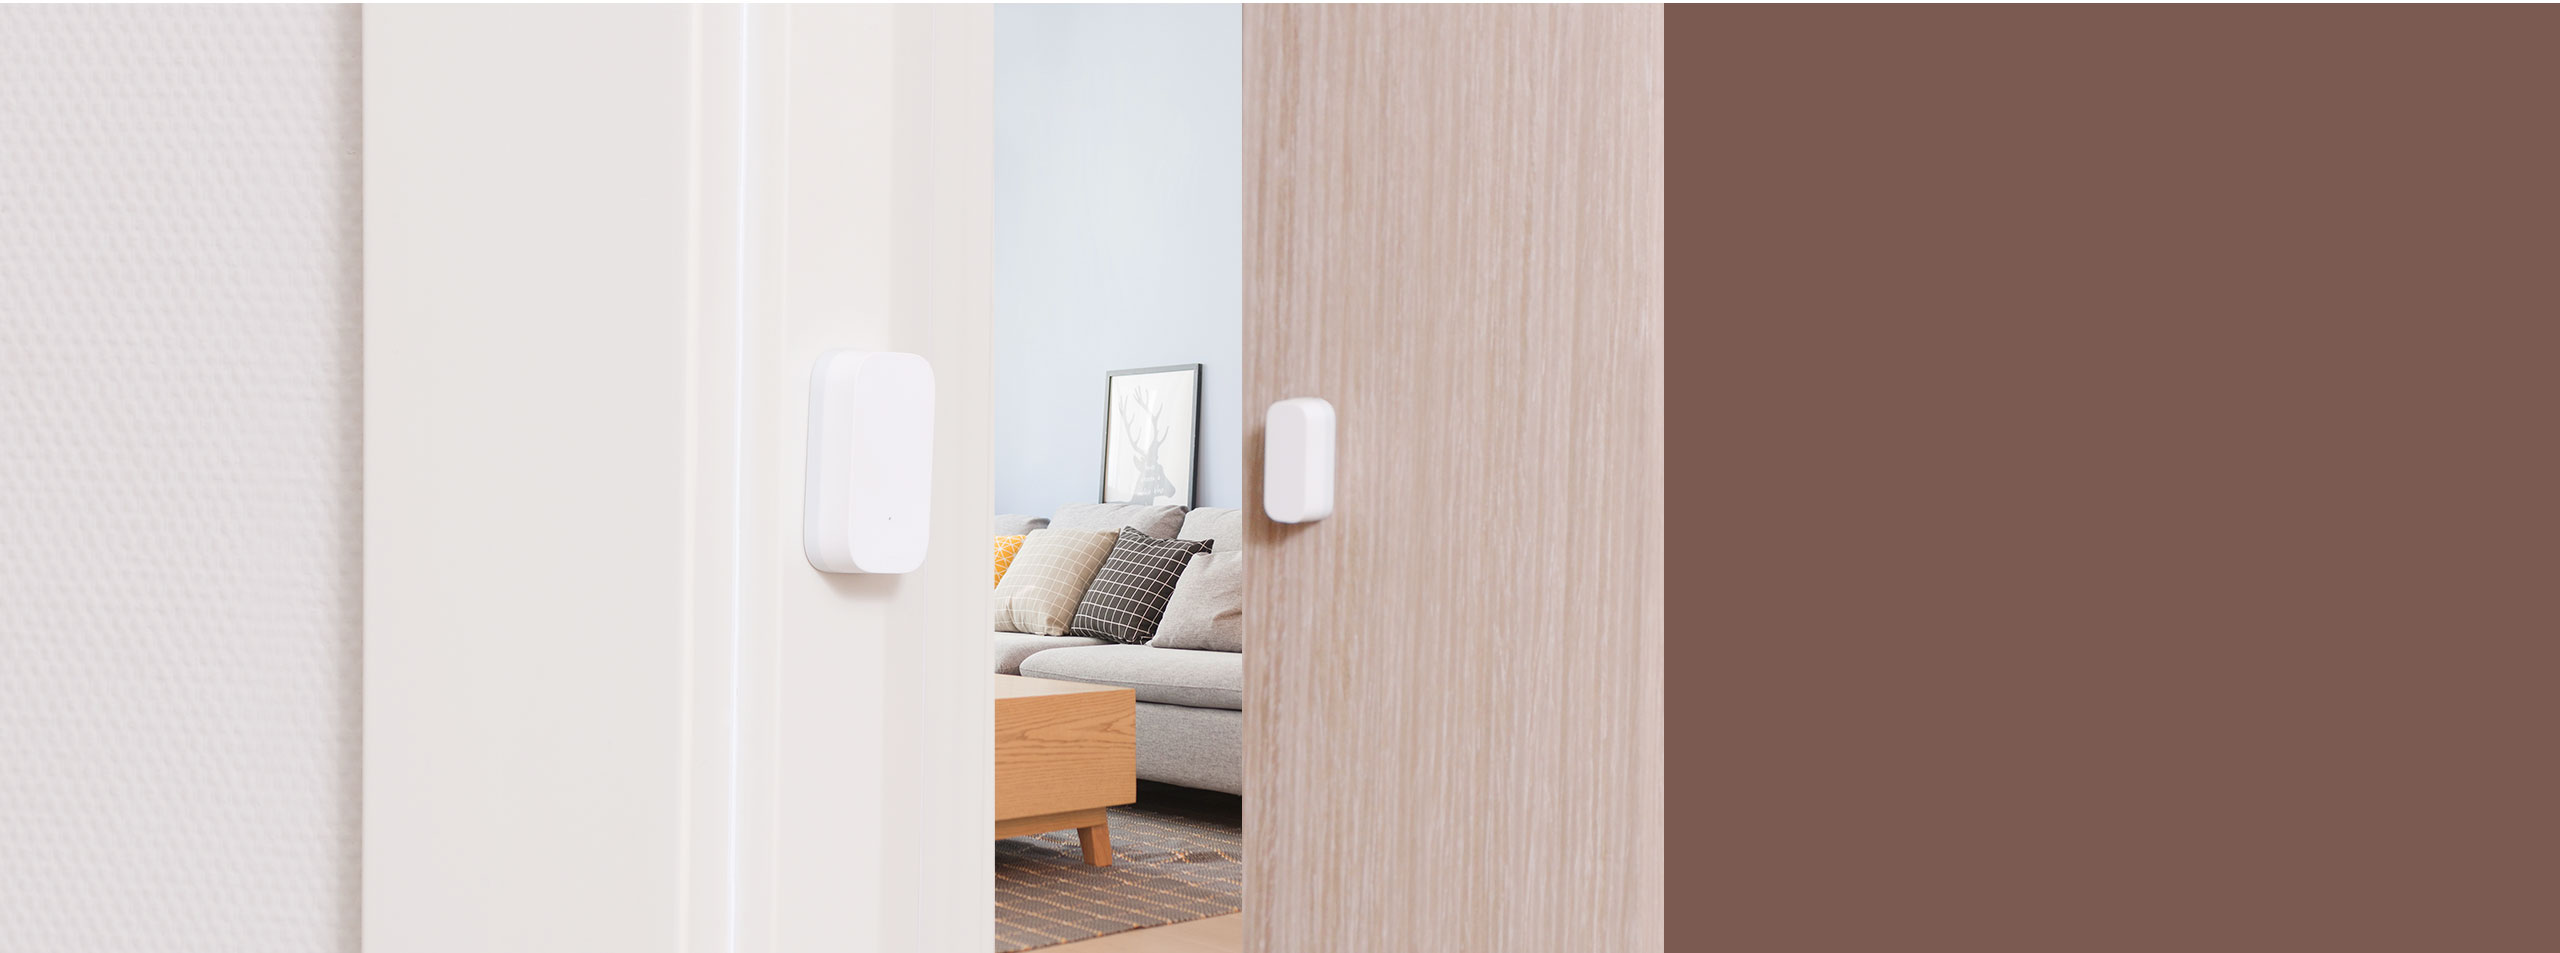 Smart Door/Window Sensor detects continously the status of your door or window